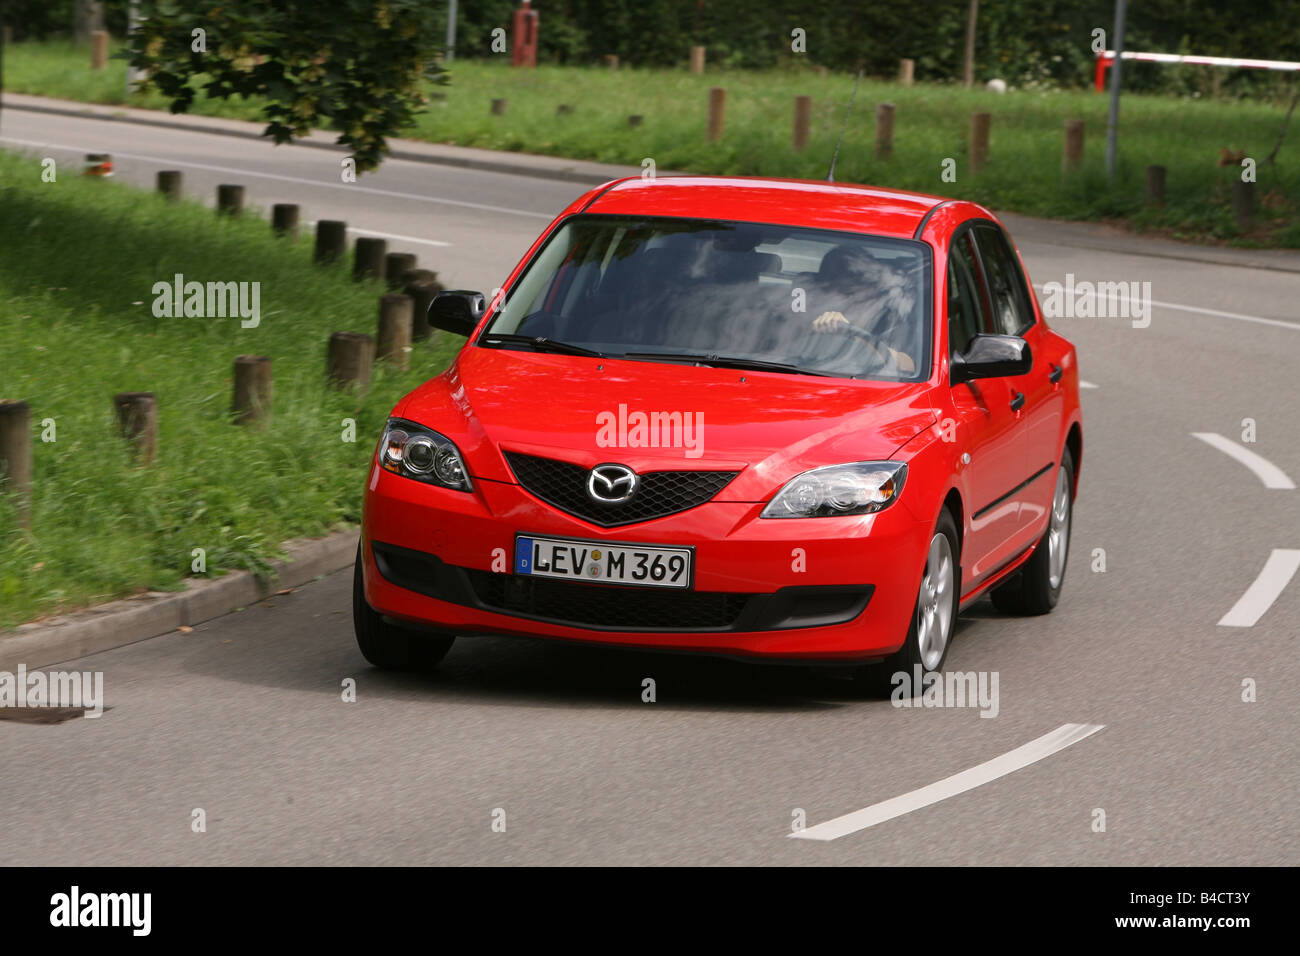 Mazda 3 sport -Fotos und -Bildmaterial in hoher Auflösung – Alamy